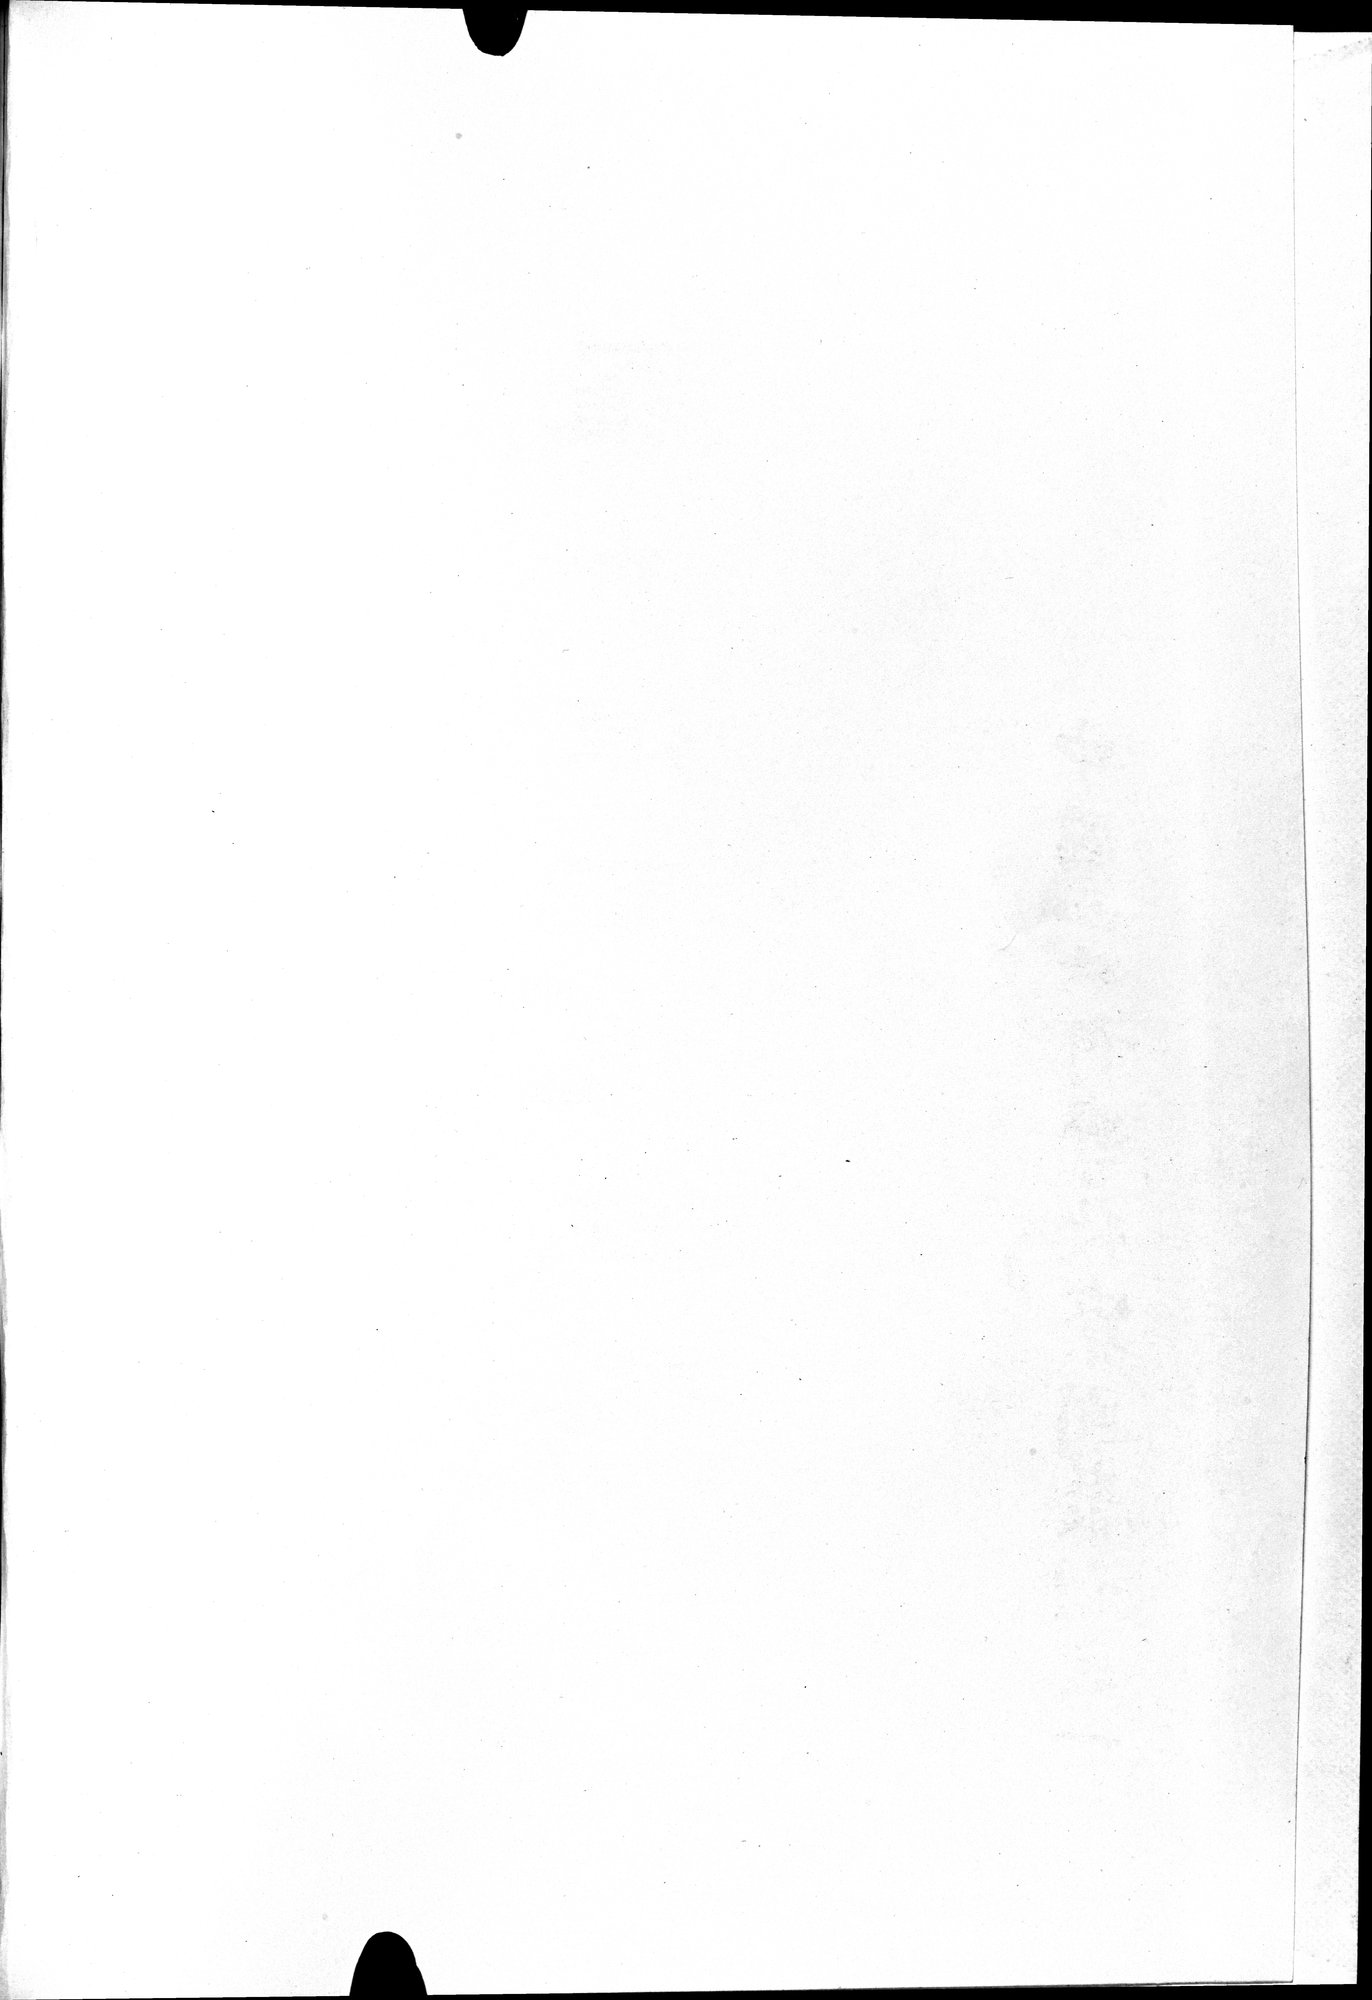 羅布淖爾考古記 : vol.1 / Page 4 (Grayscale High Resolution Image)